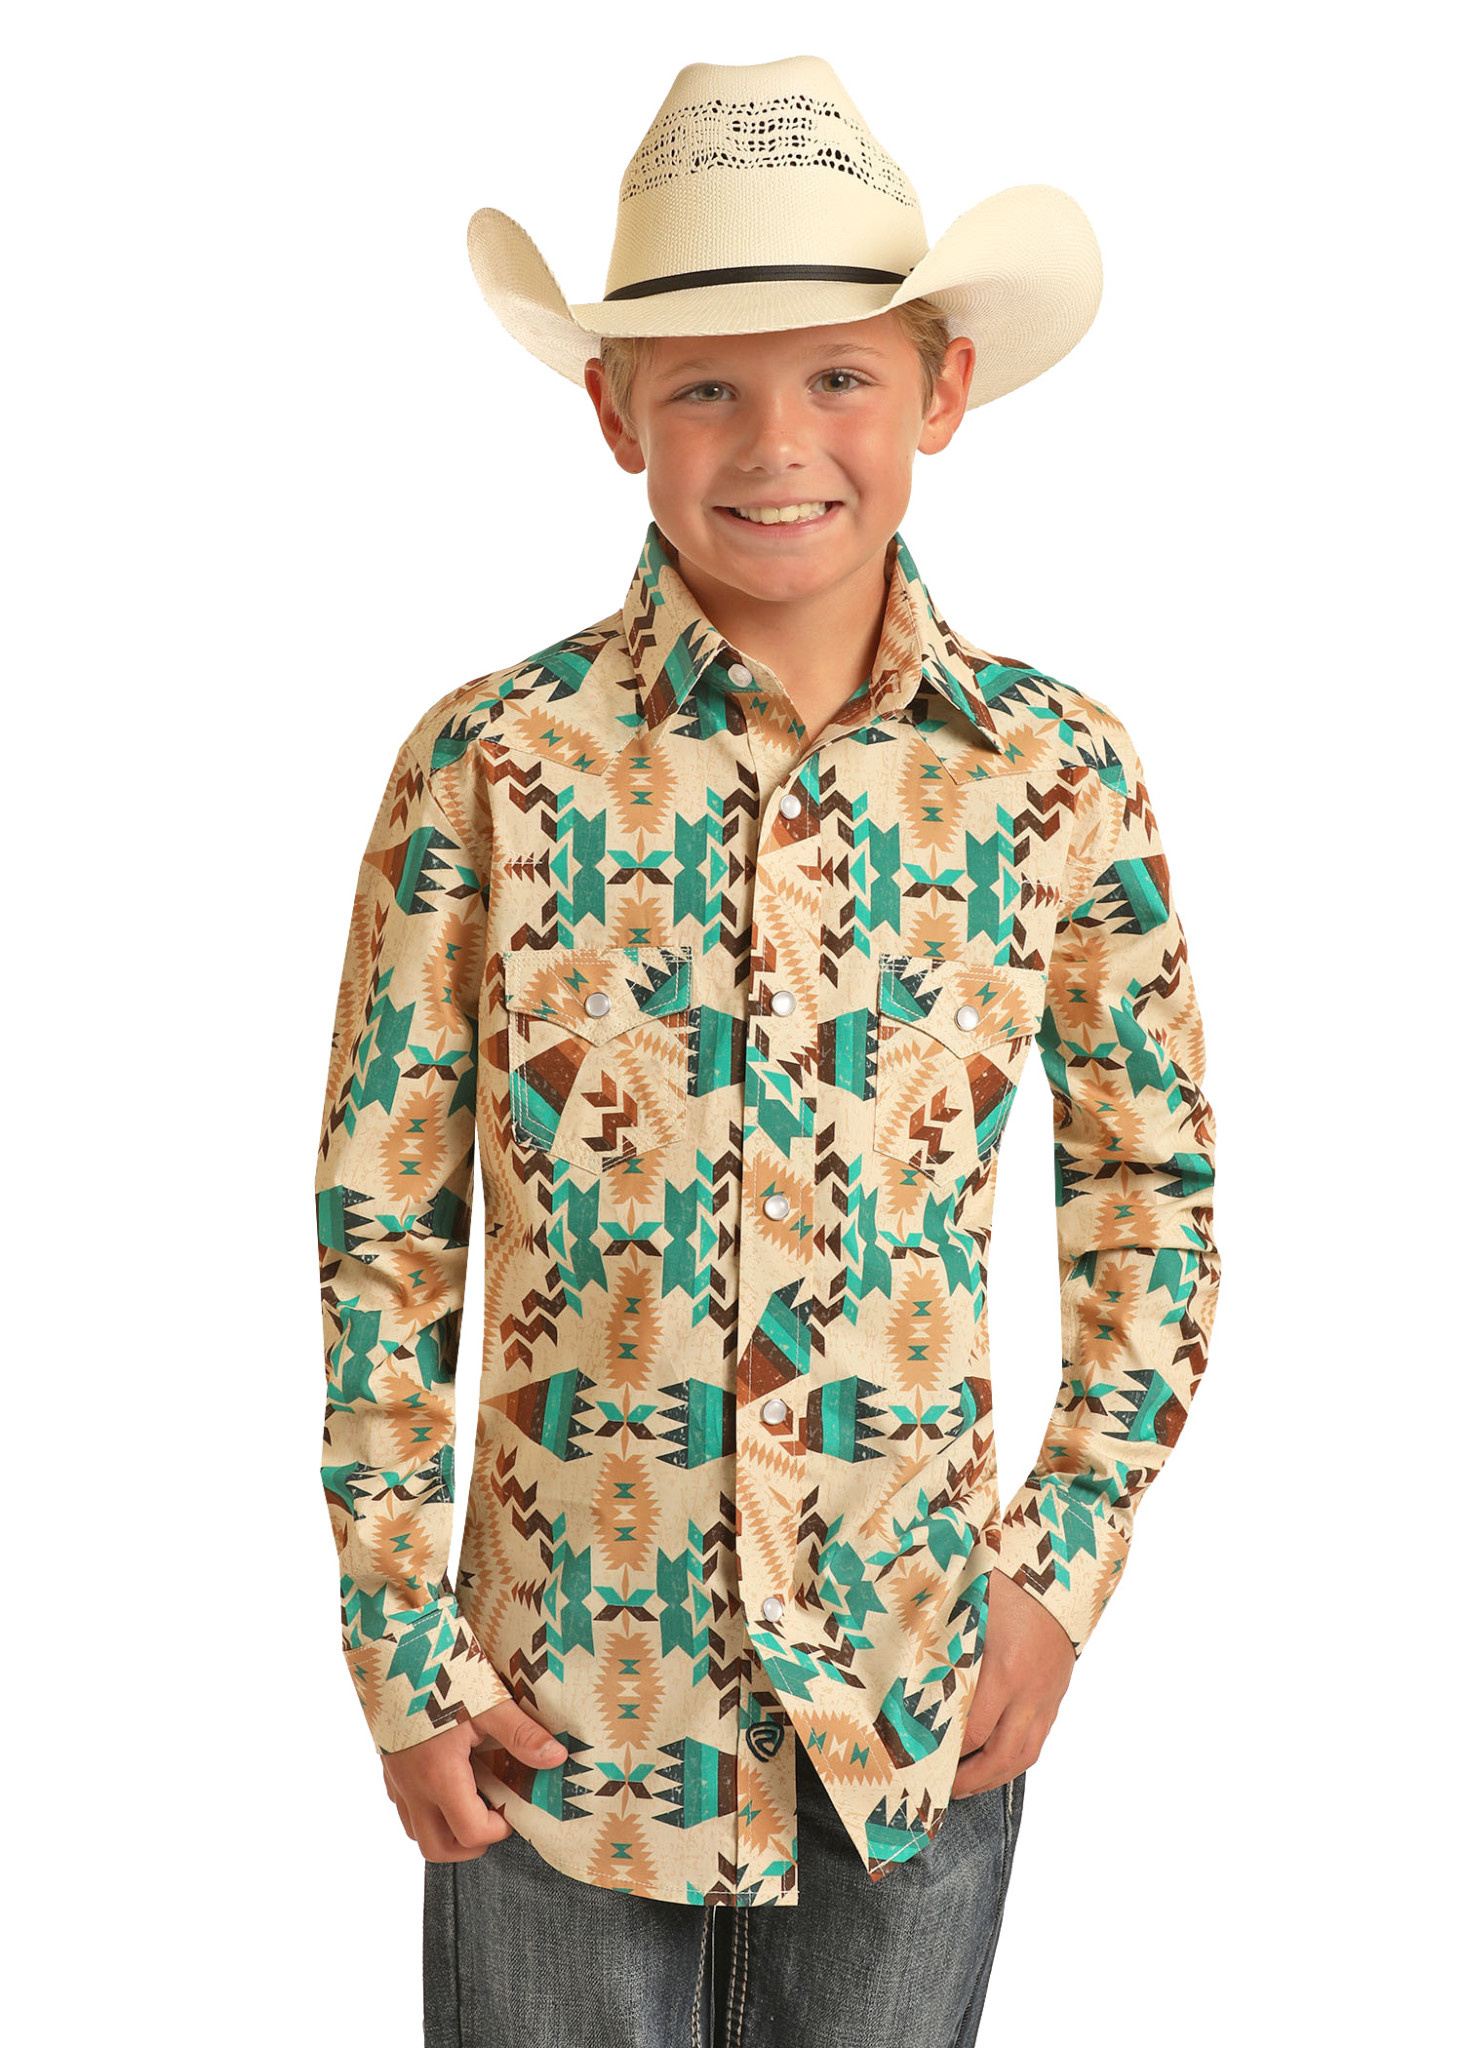 The Boy's Pearl Snap Rodeo Shirt - BarnKat Clothing